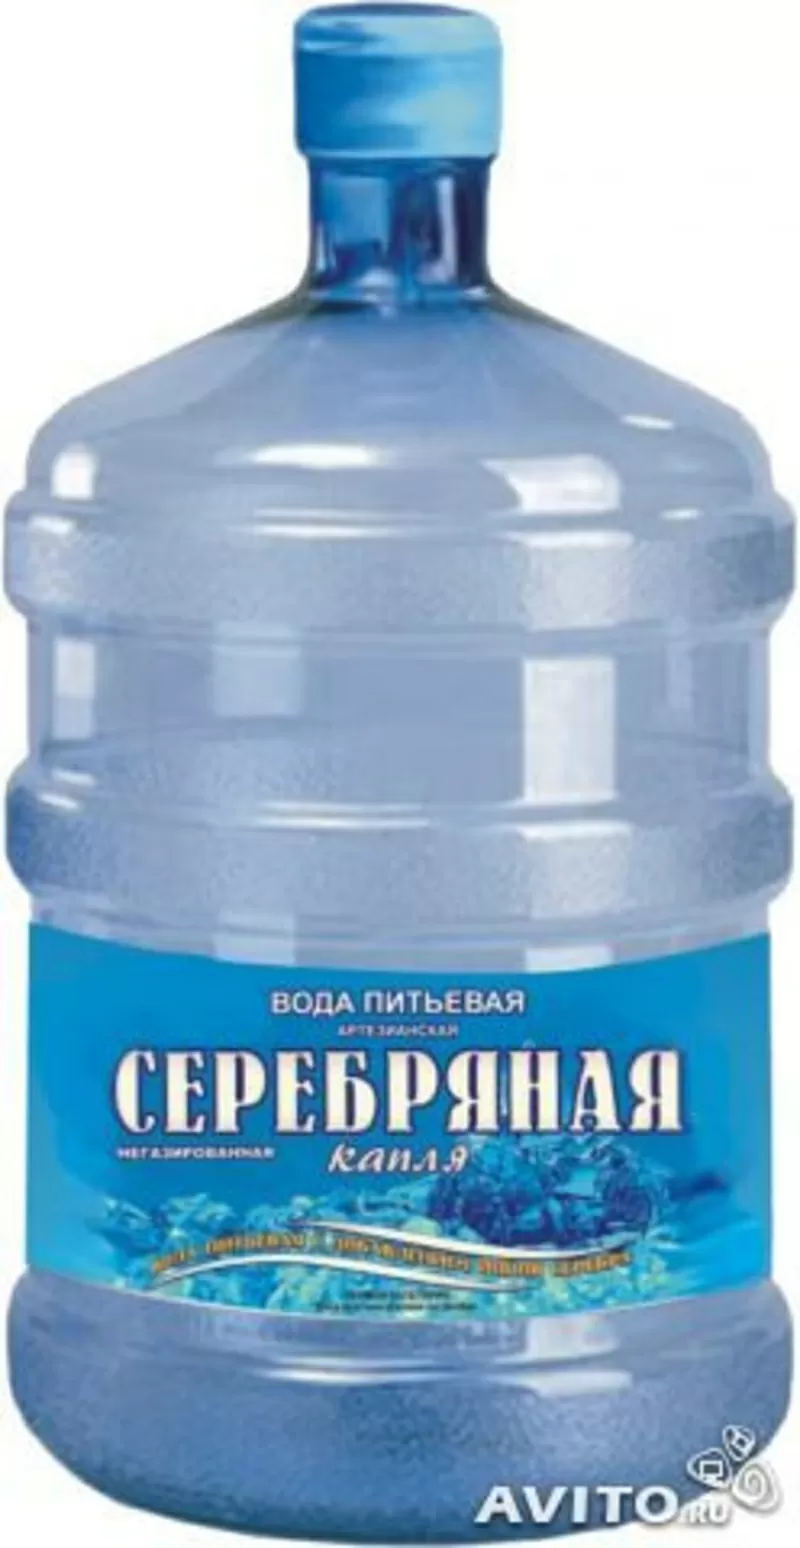 доставка питьевой воды в Краснодаре и Анапе 6